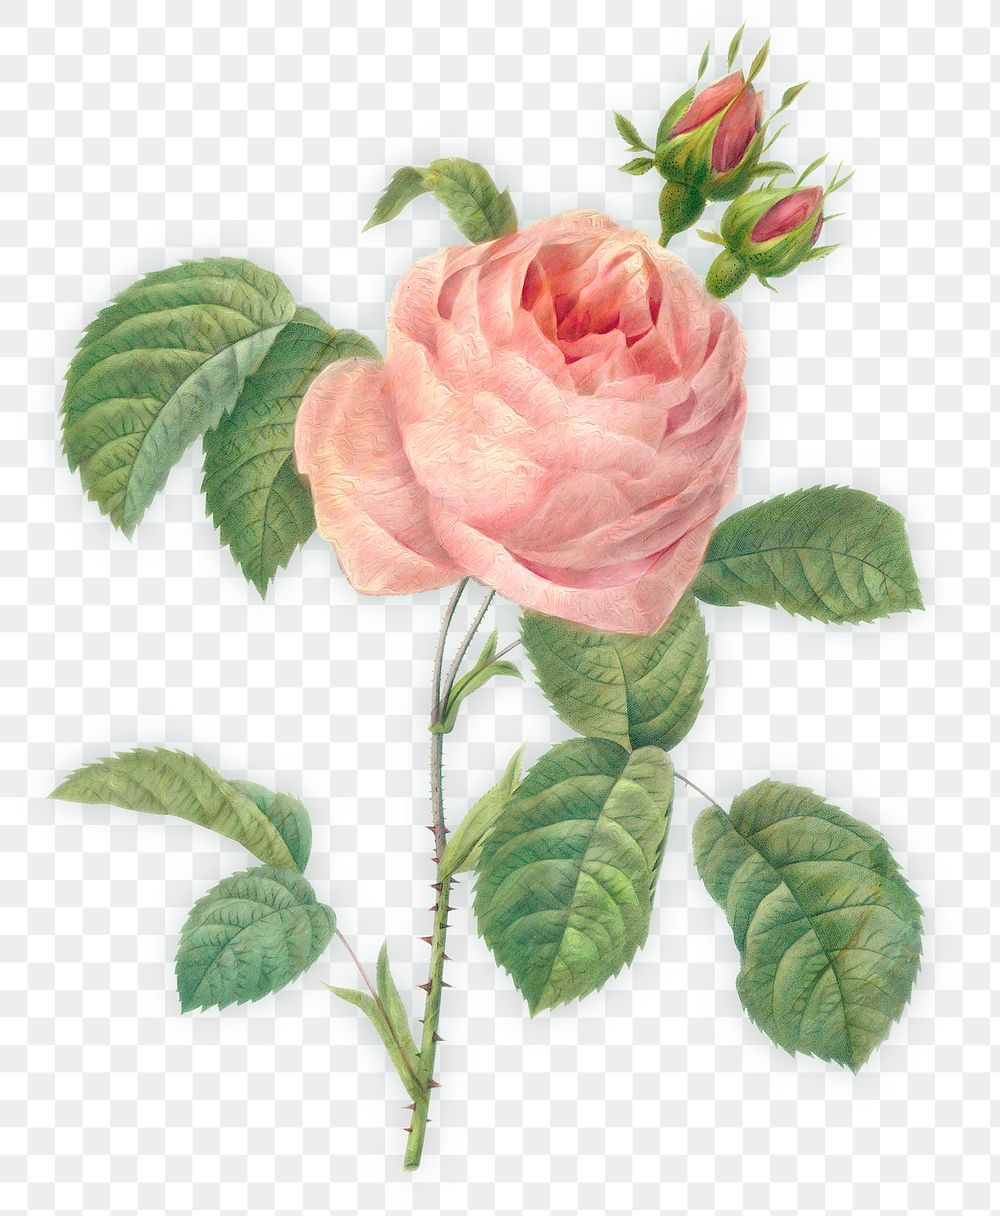 Pink rose flower design element